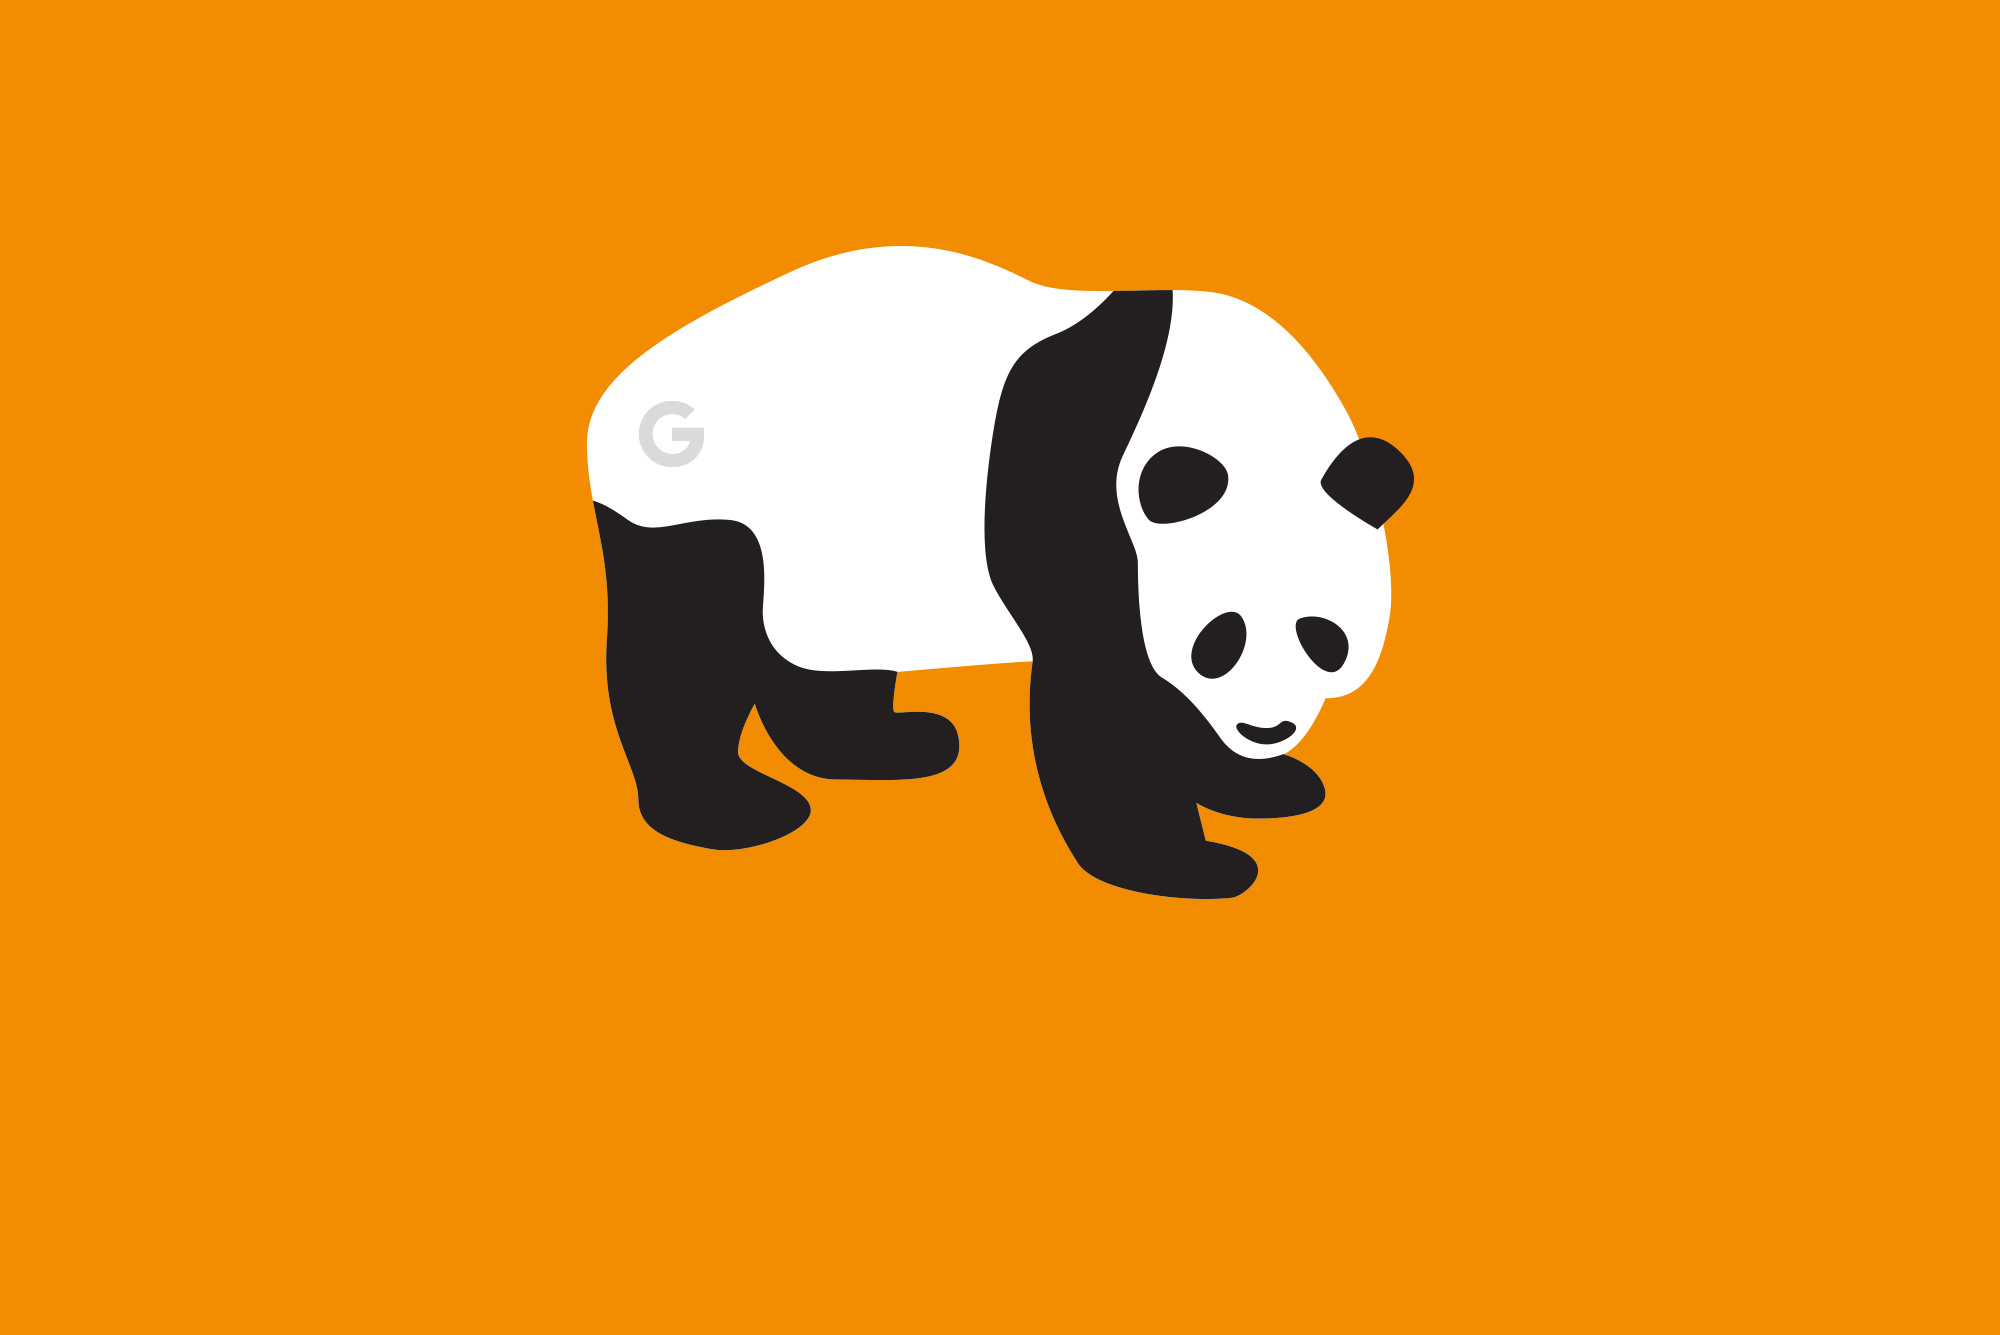 Google Panda on orange background - Google Algorithm Update